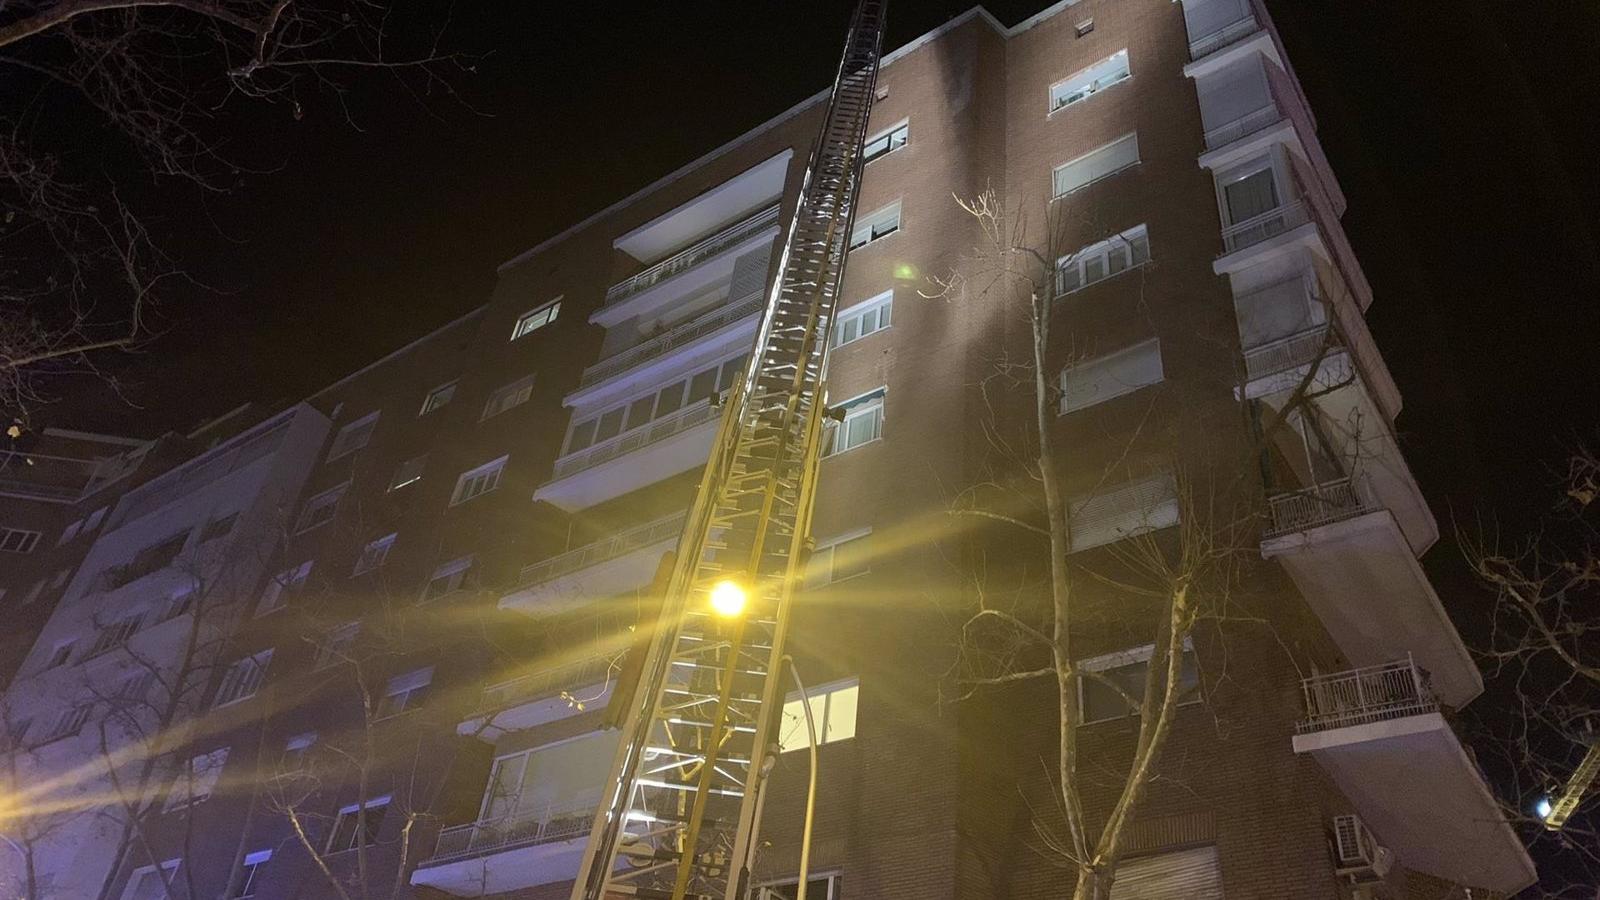 Extinguido un fuego en un edificio de viviendas en la calle Santiago Bernabéu, Madrid